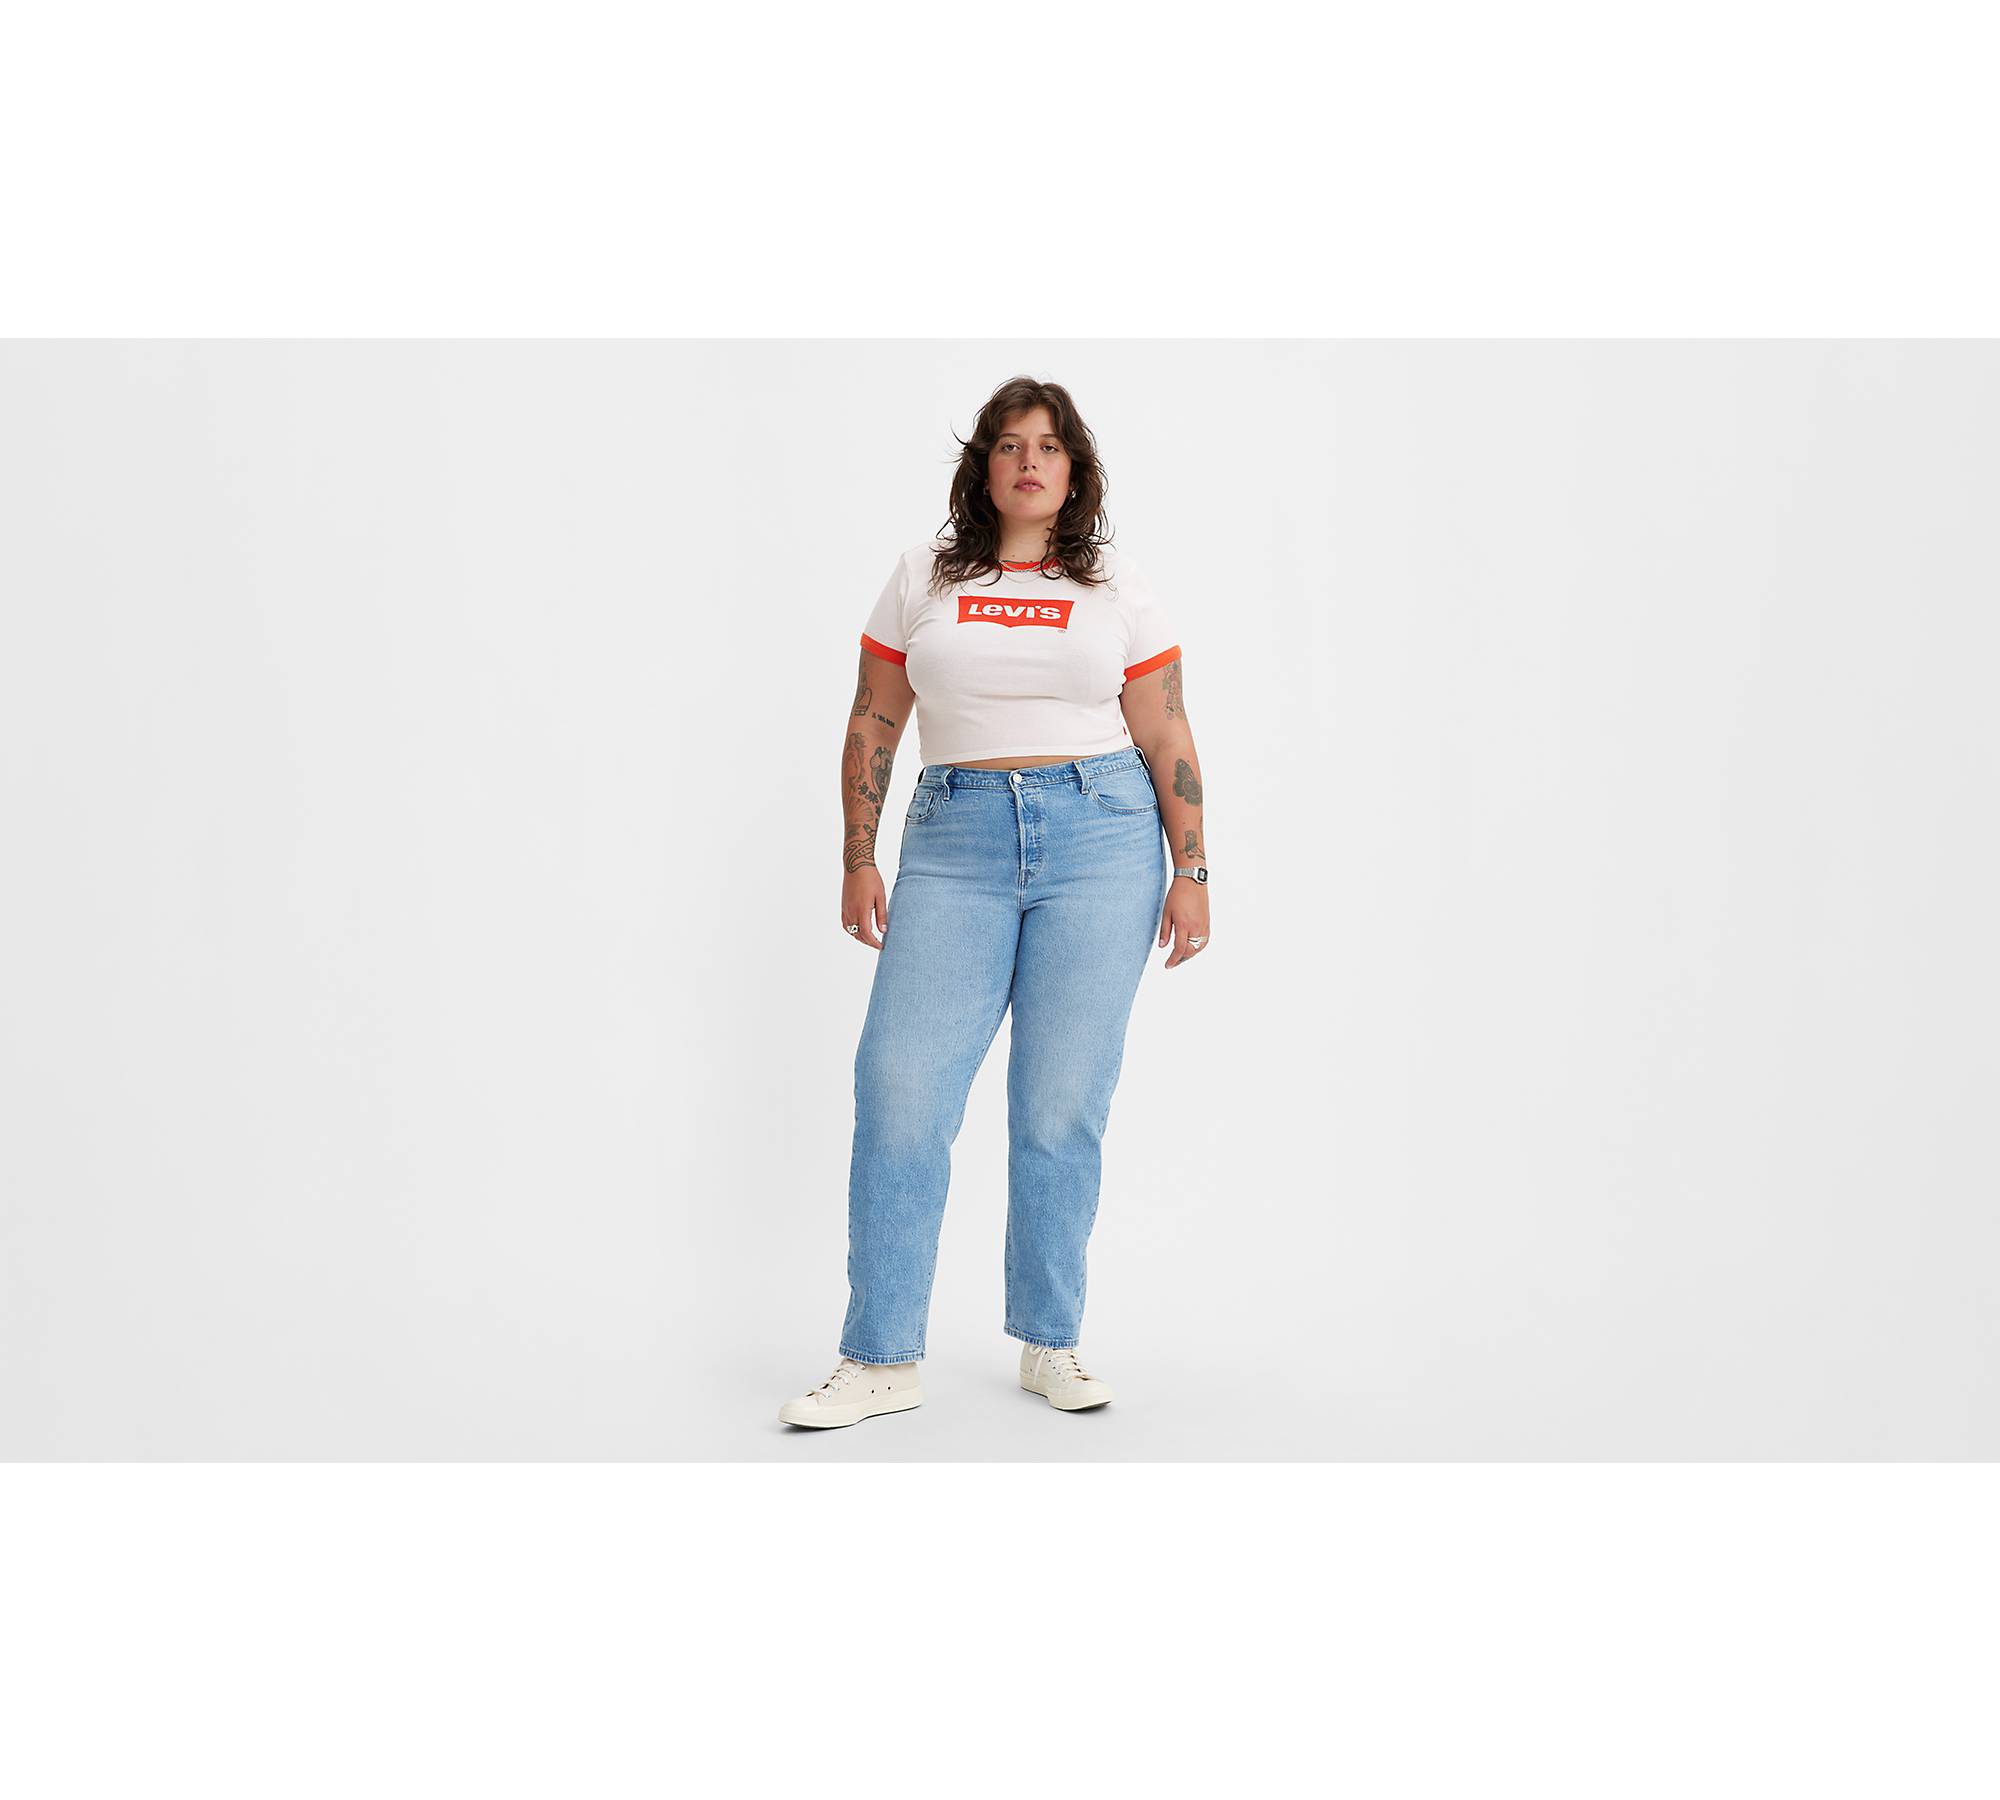 stereoanlæg Vise dig Regeringsforordning 501® Original Fit Women's Jeans (plus Size) - Light Wash | Levi's® US